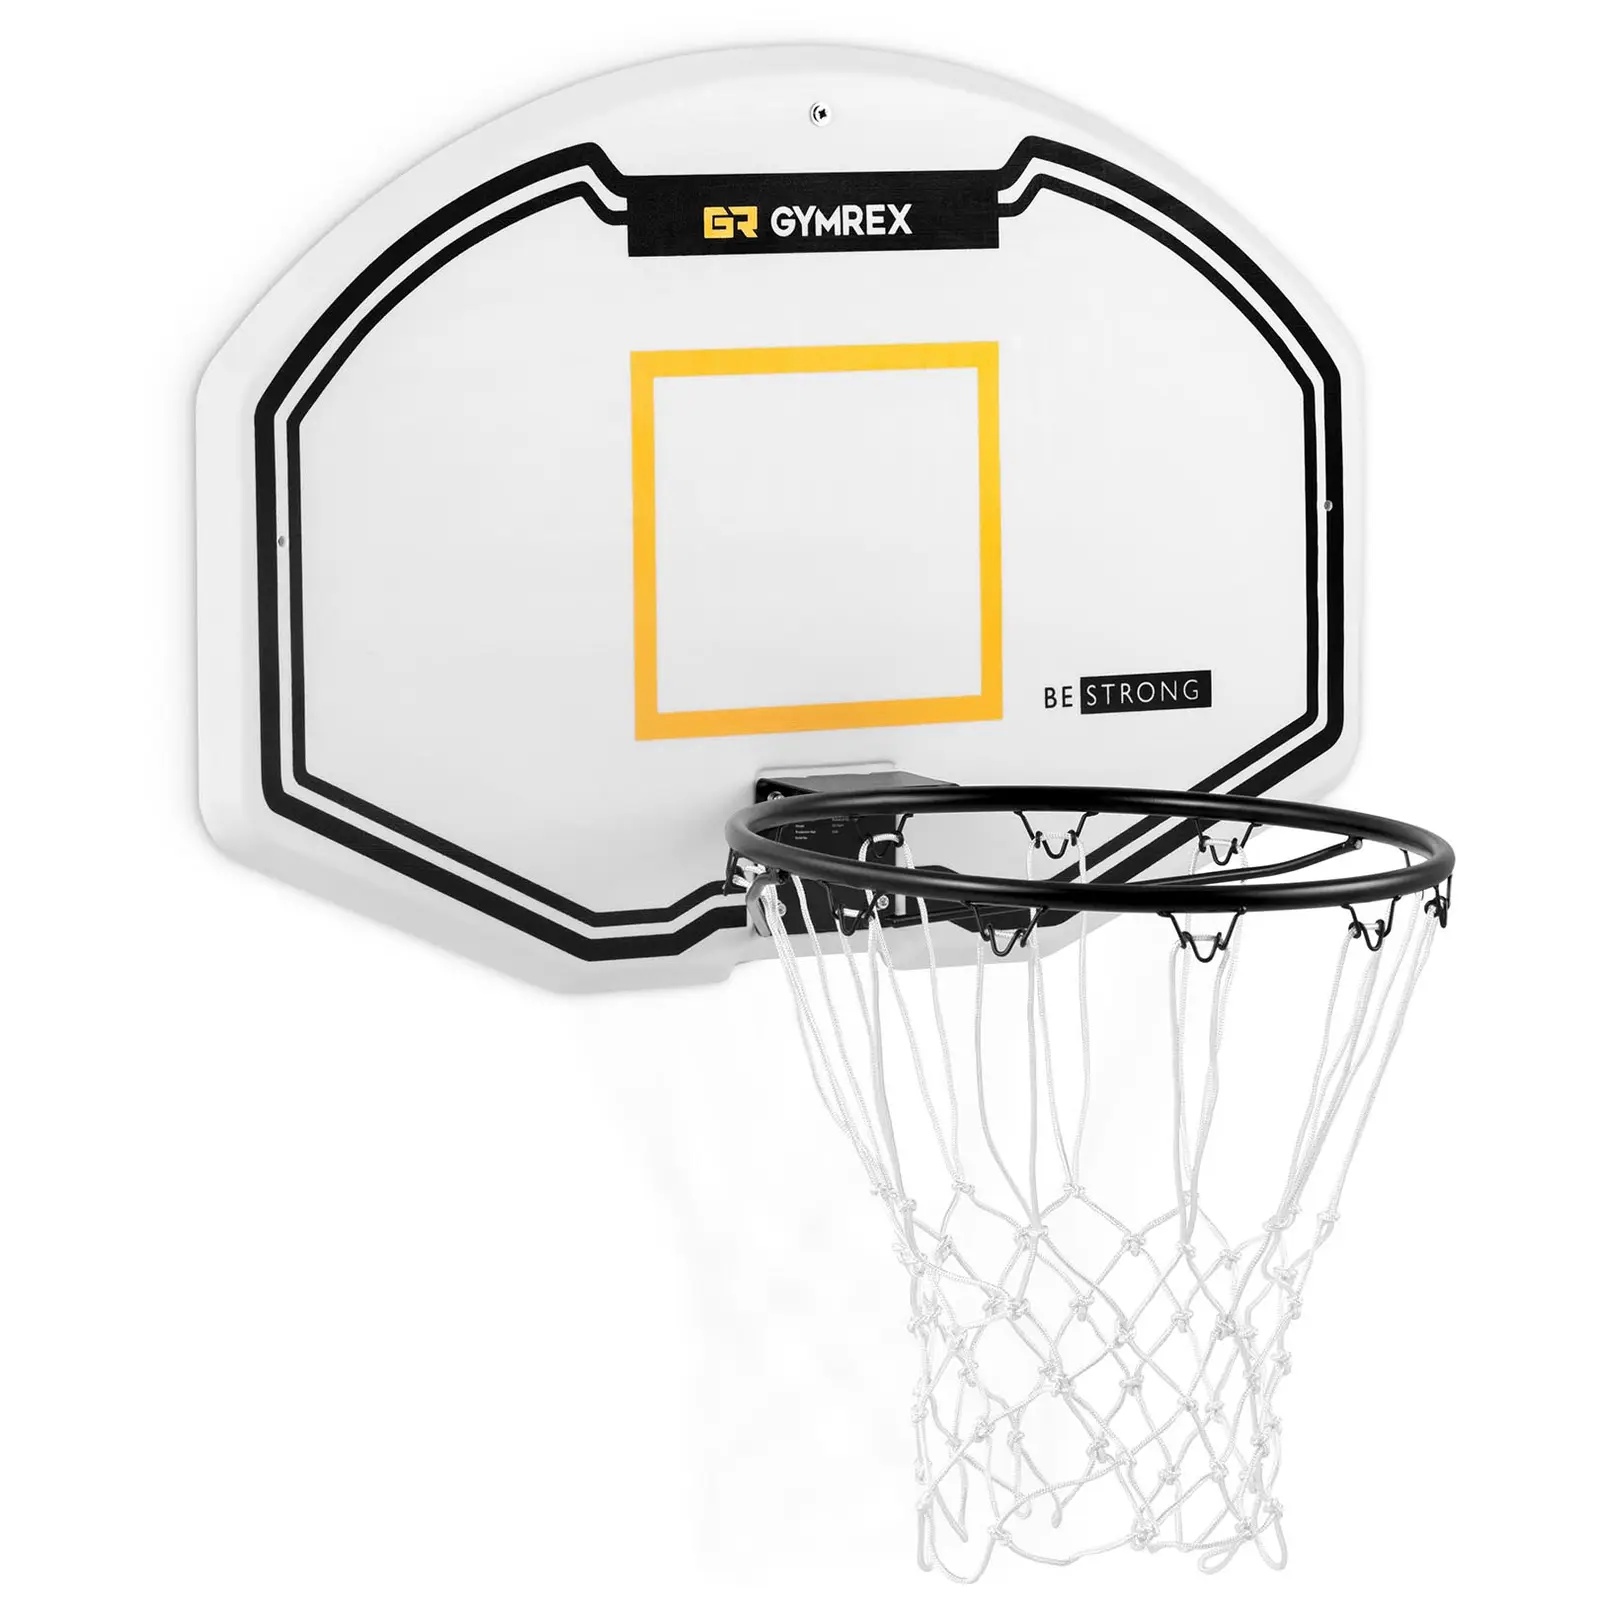 Panier de basketball - 91 x 61 cm - Diamètre de l'arceau 42,5 cm